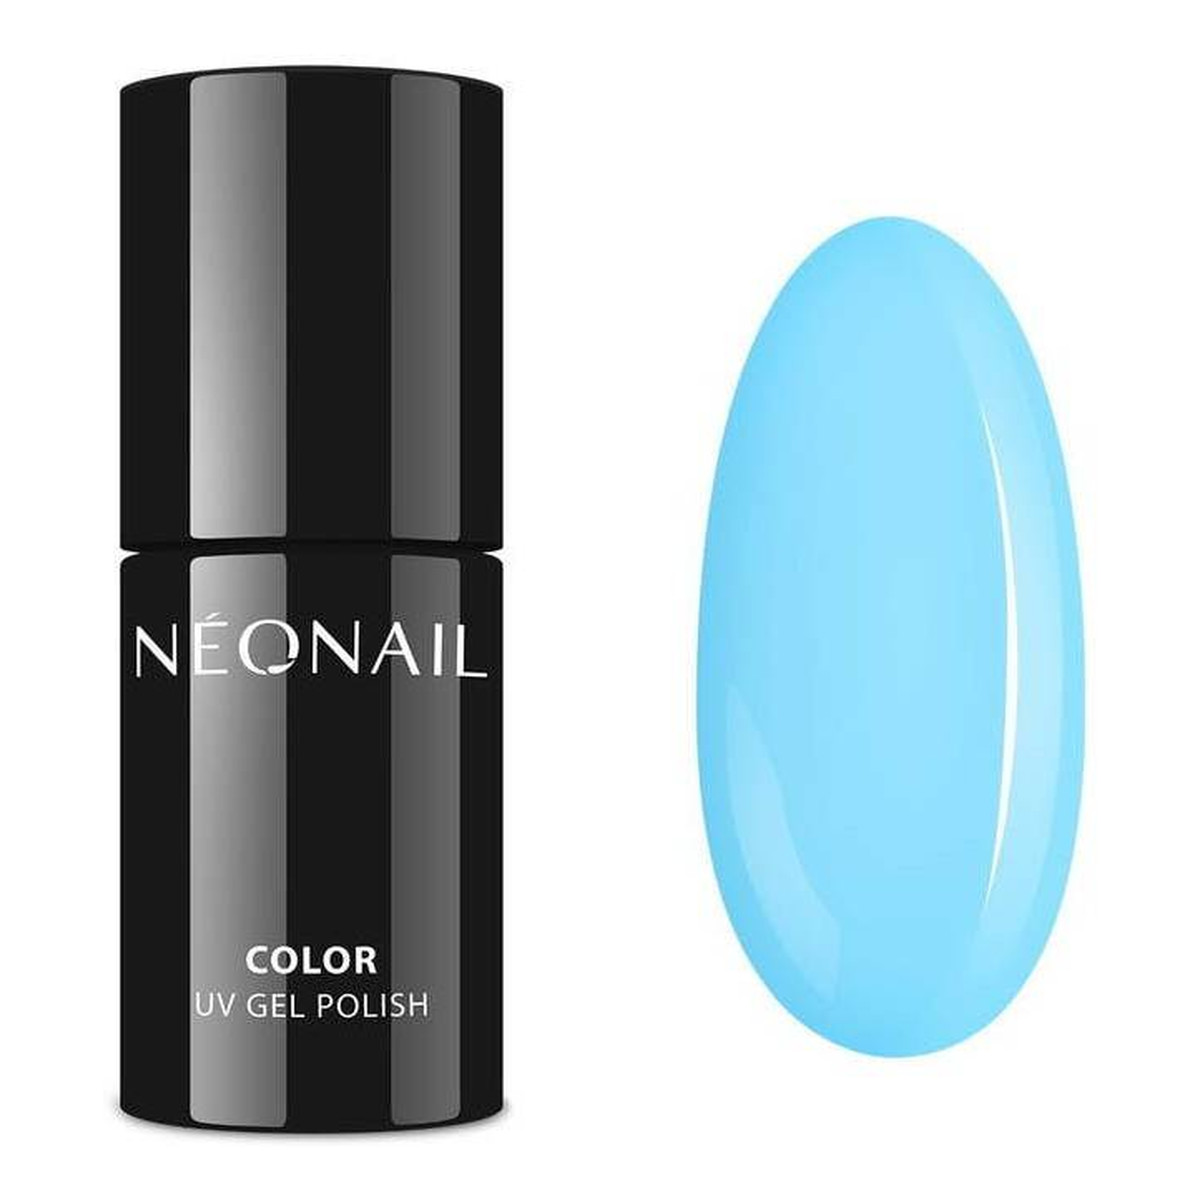 NeoNail Gel Polish Color Lakier Hybrydowy UV 7ml